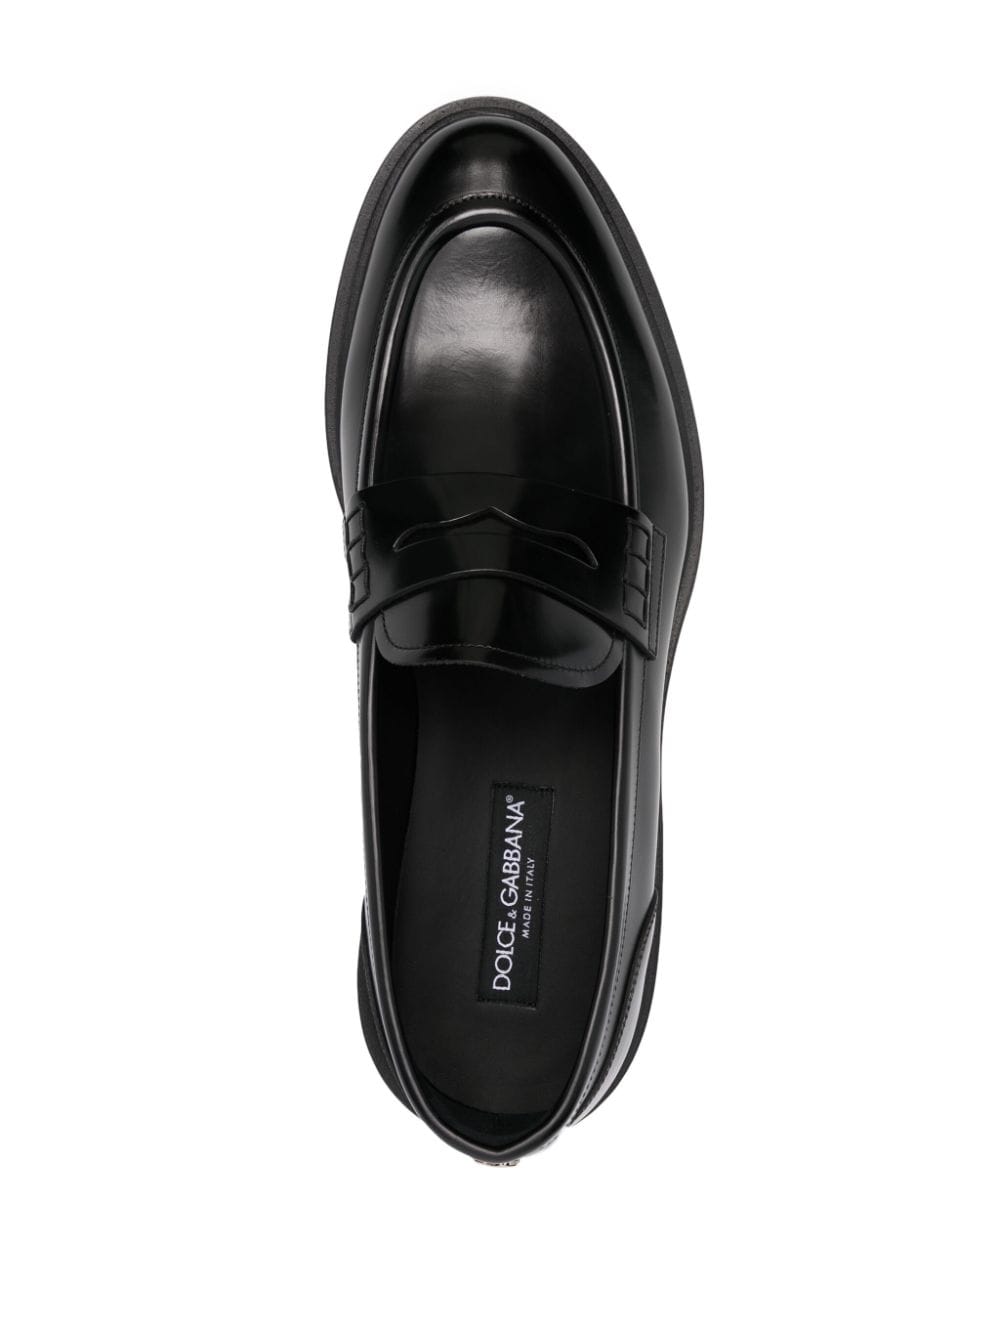 Dolce & Gabbana DOLCE & GABBANA- Leather Loafers